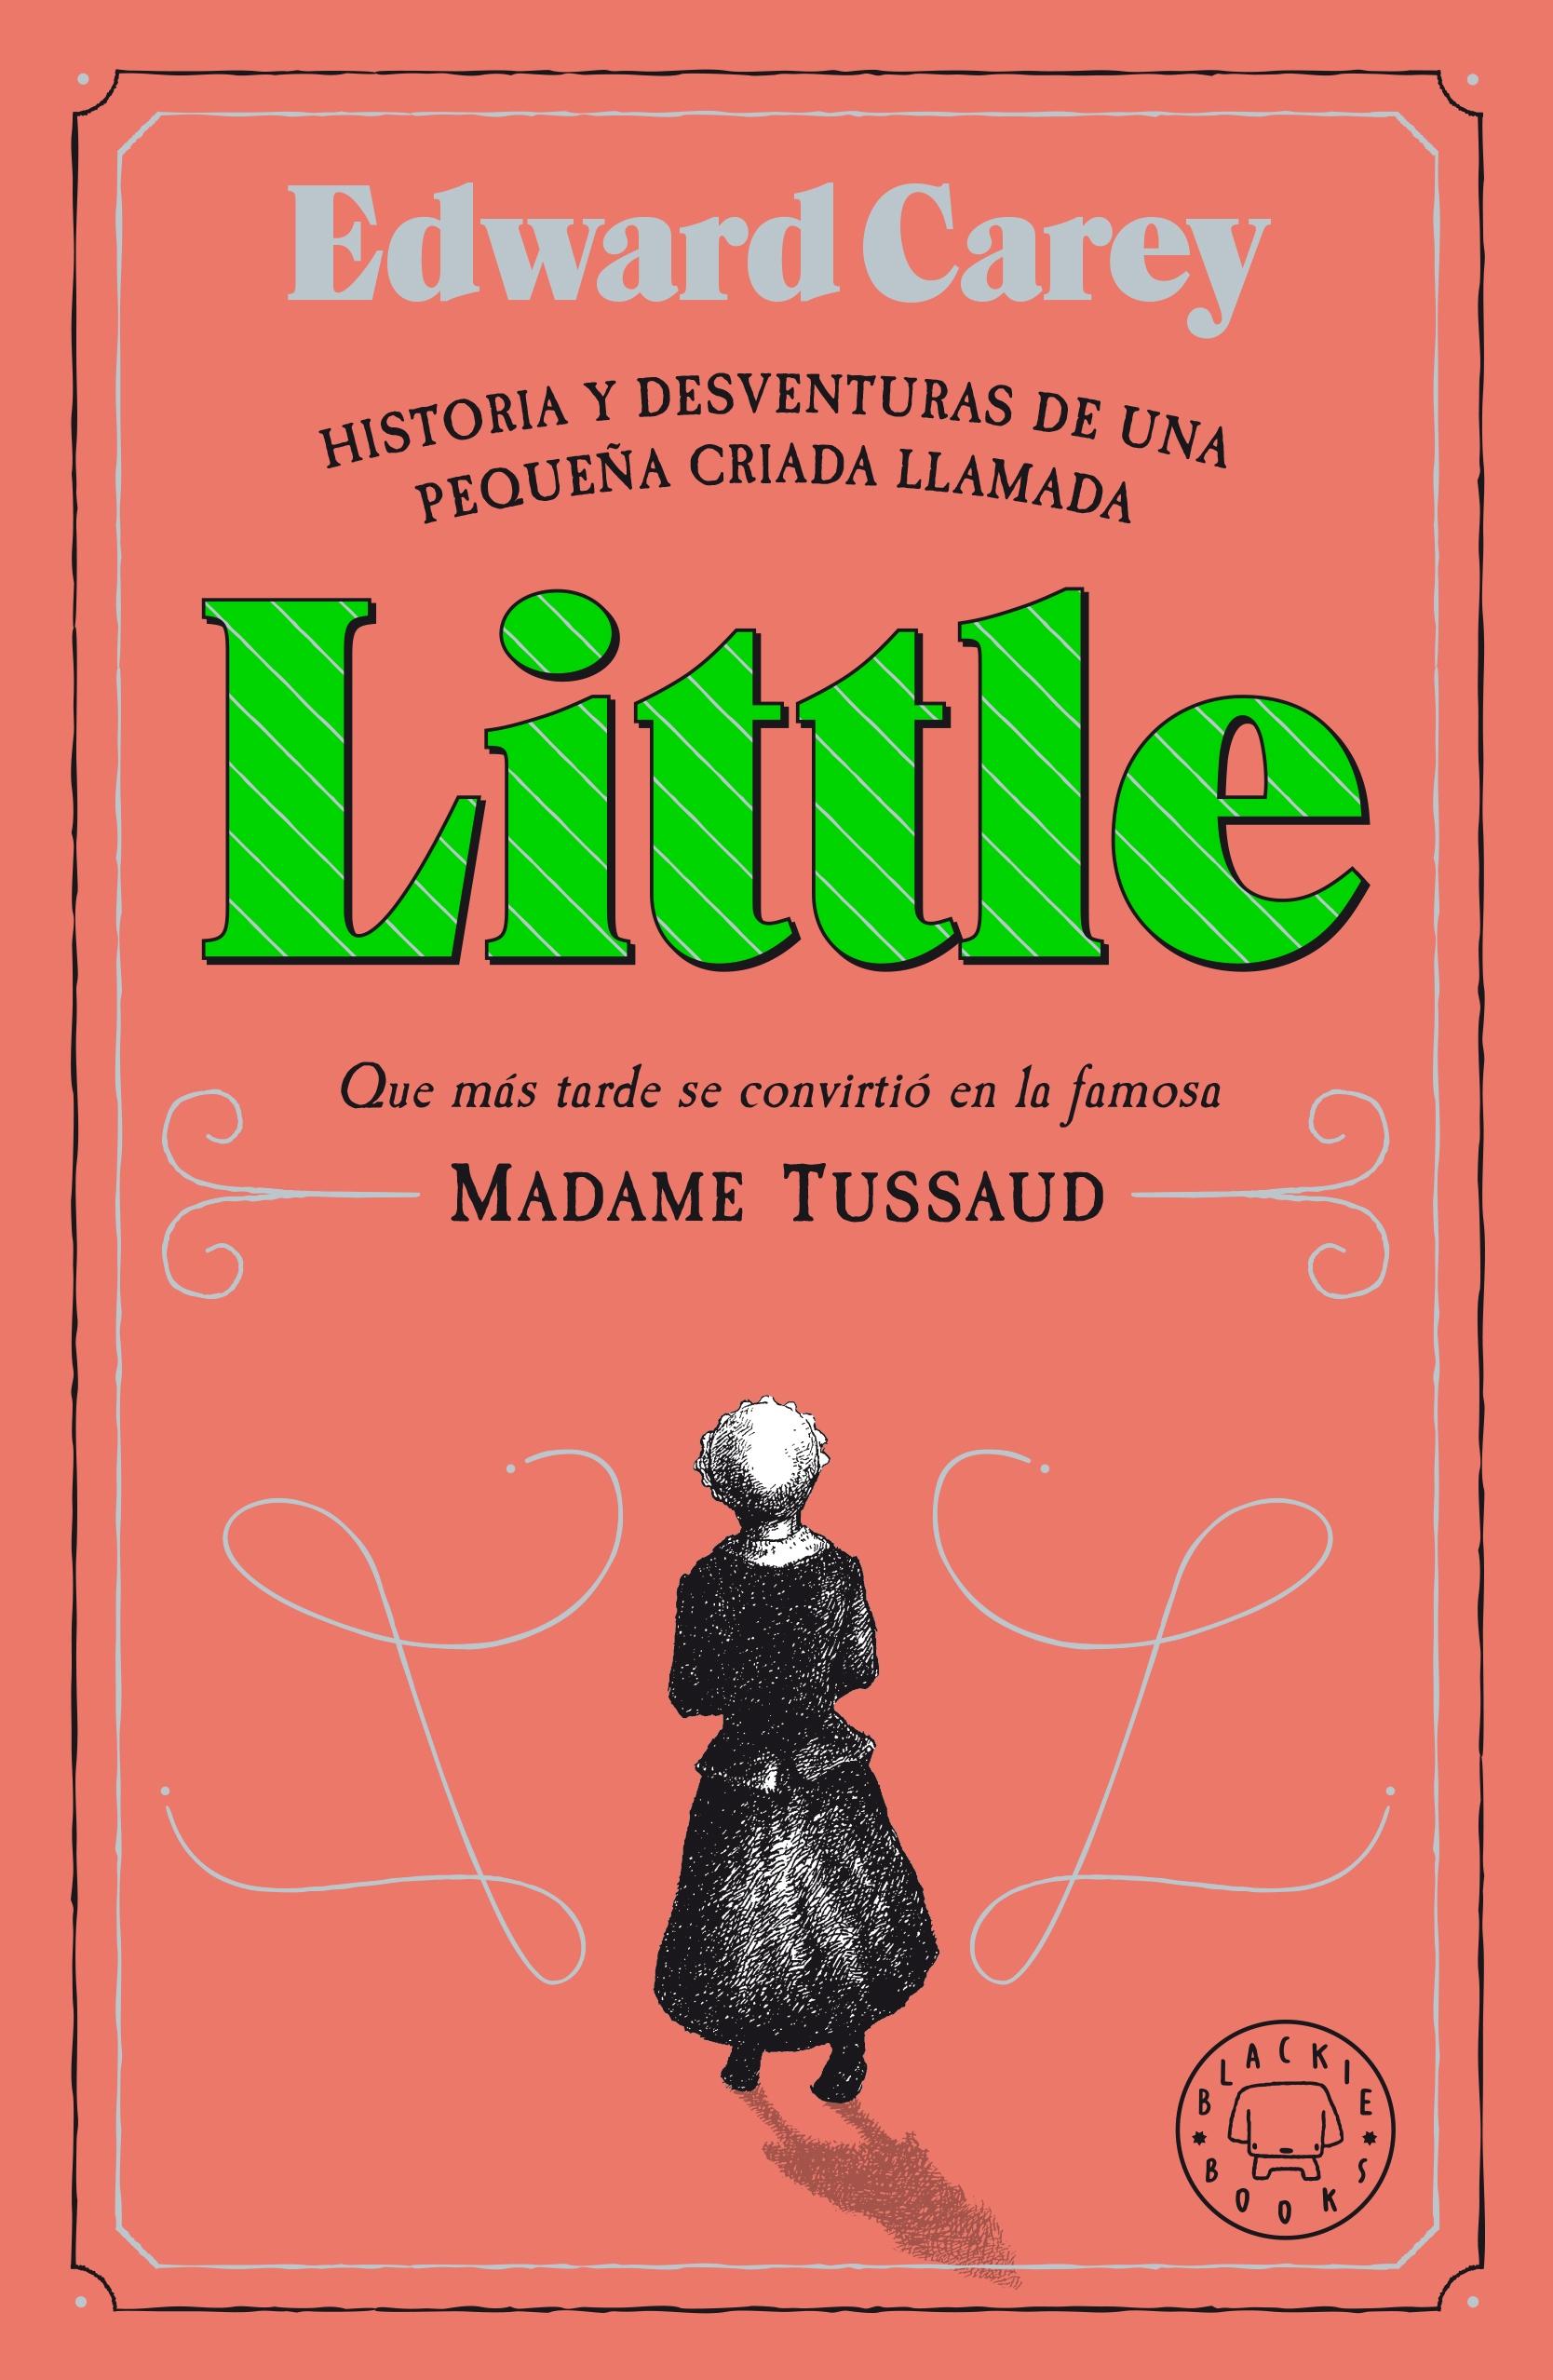 LITTLE "Historia y desventuras de una criada llamada Little que más tarde se con". 